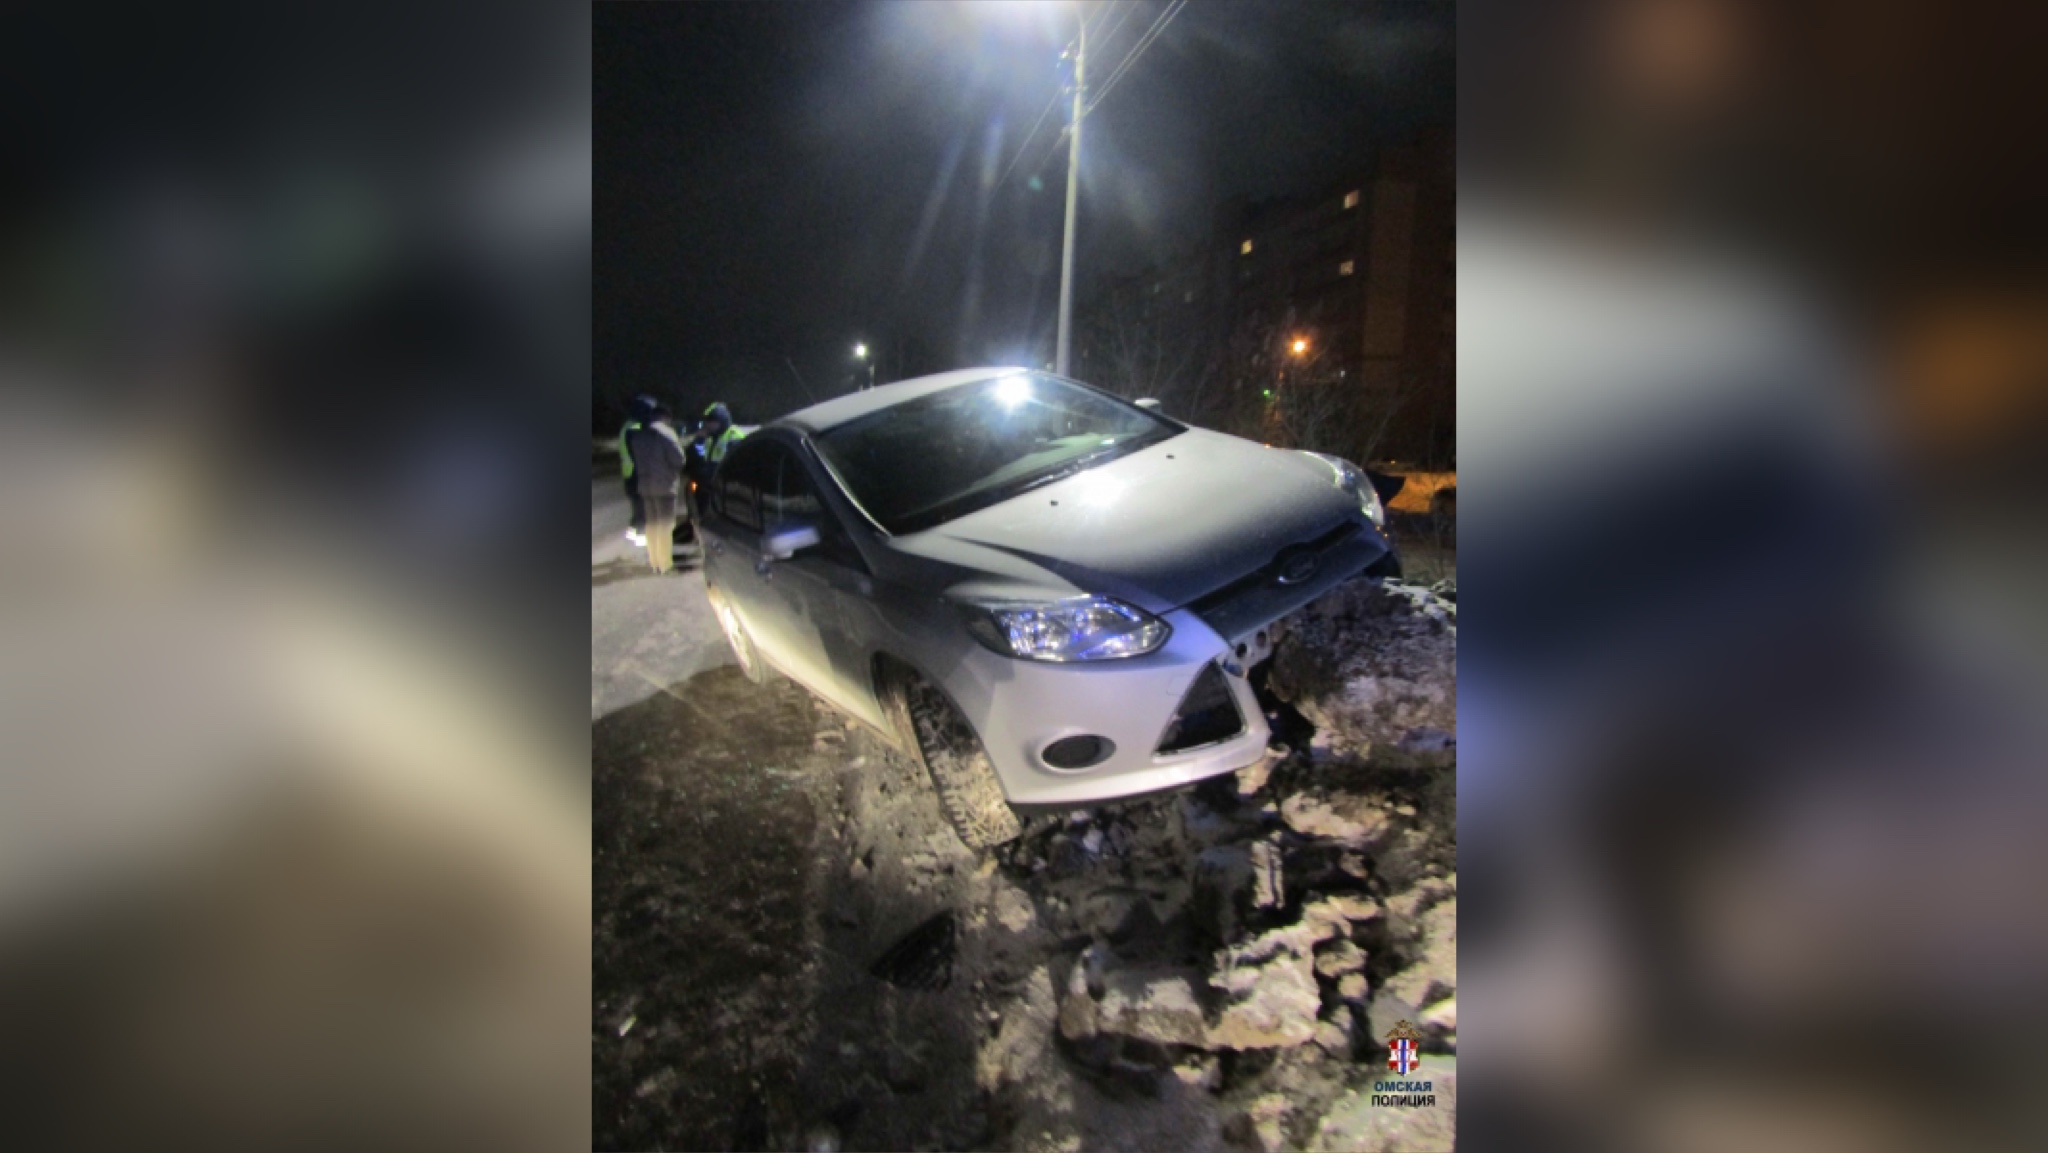 Автомобиль заявителя и обнаруженные на нём повреждения. Фото © Пресс-служба УМВД по Омской области